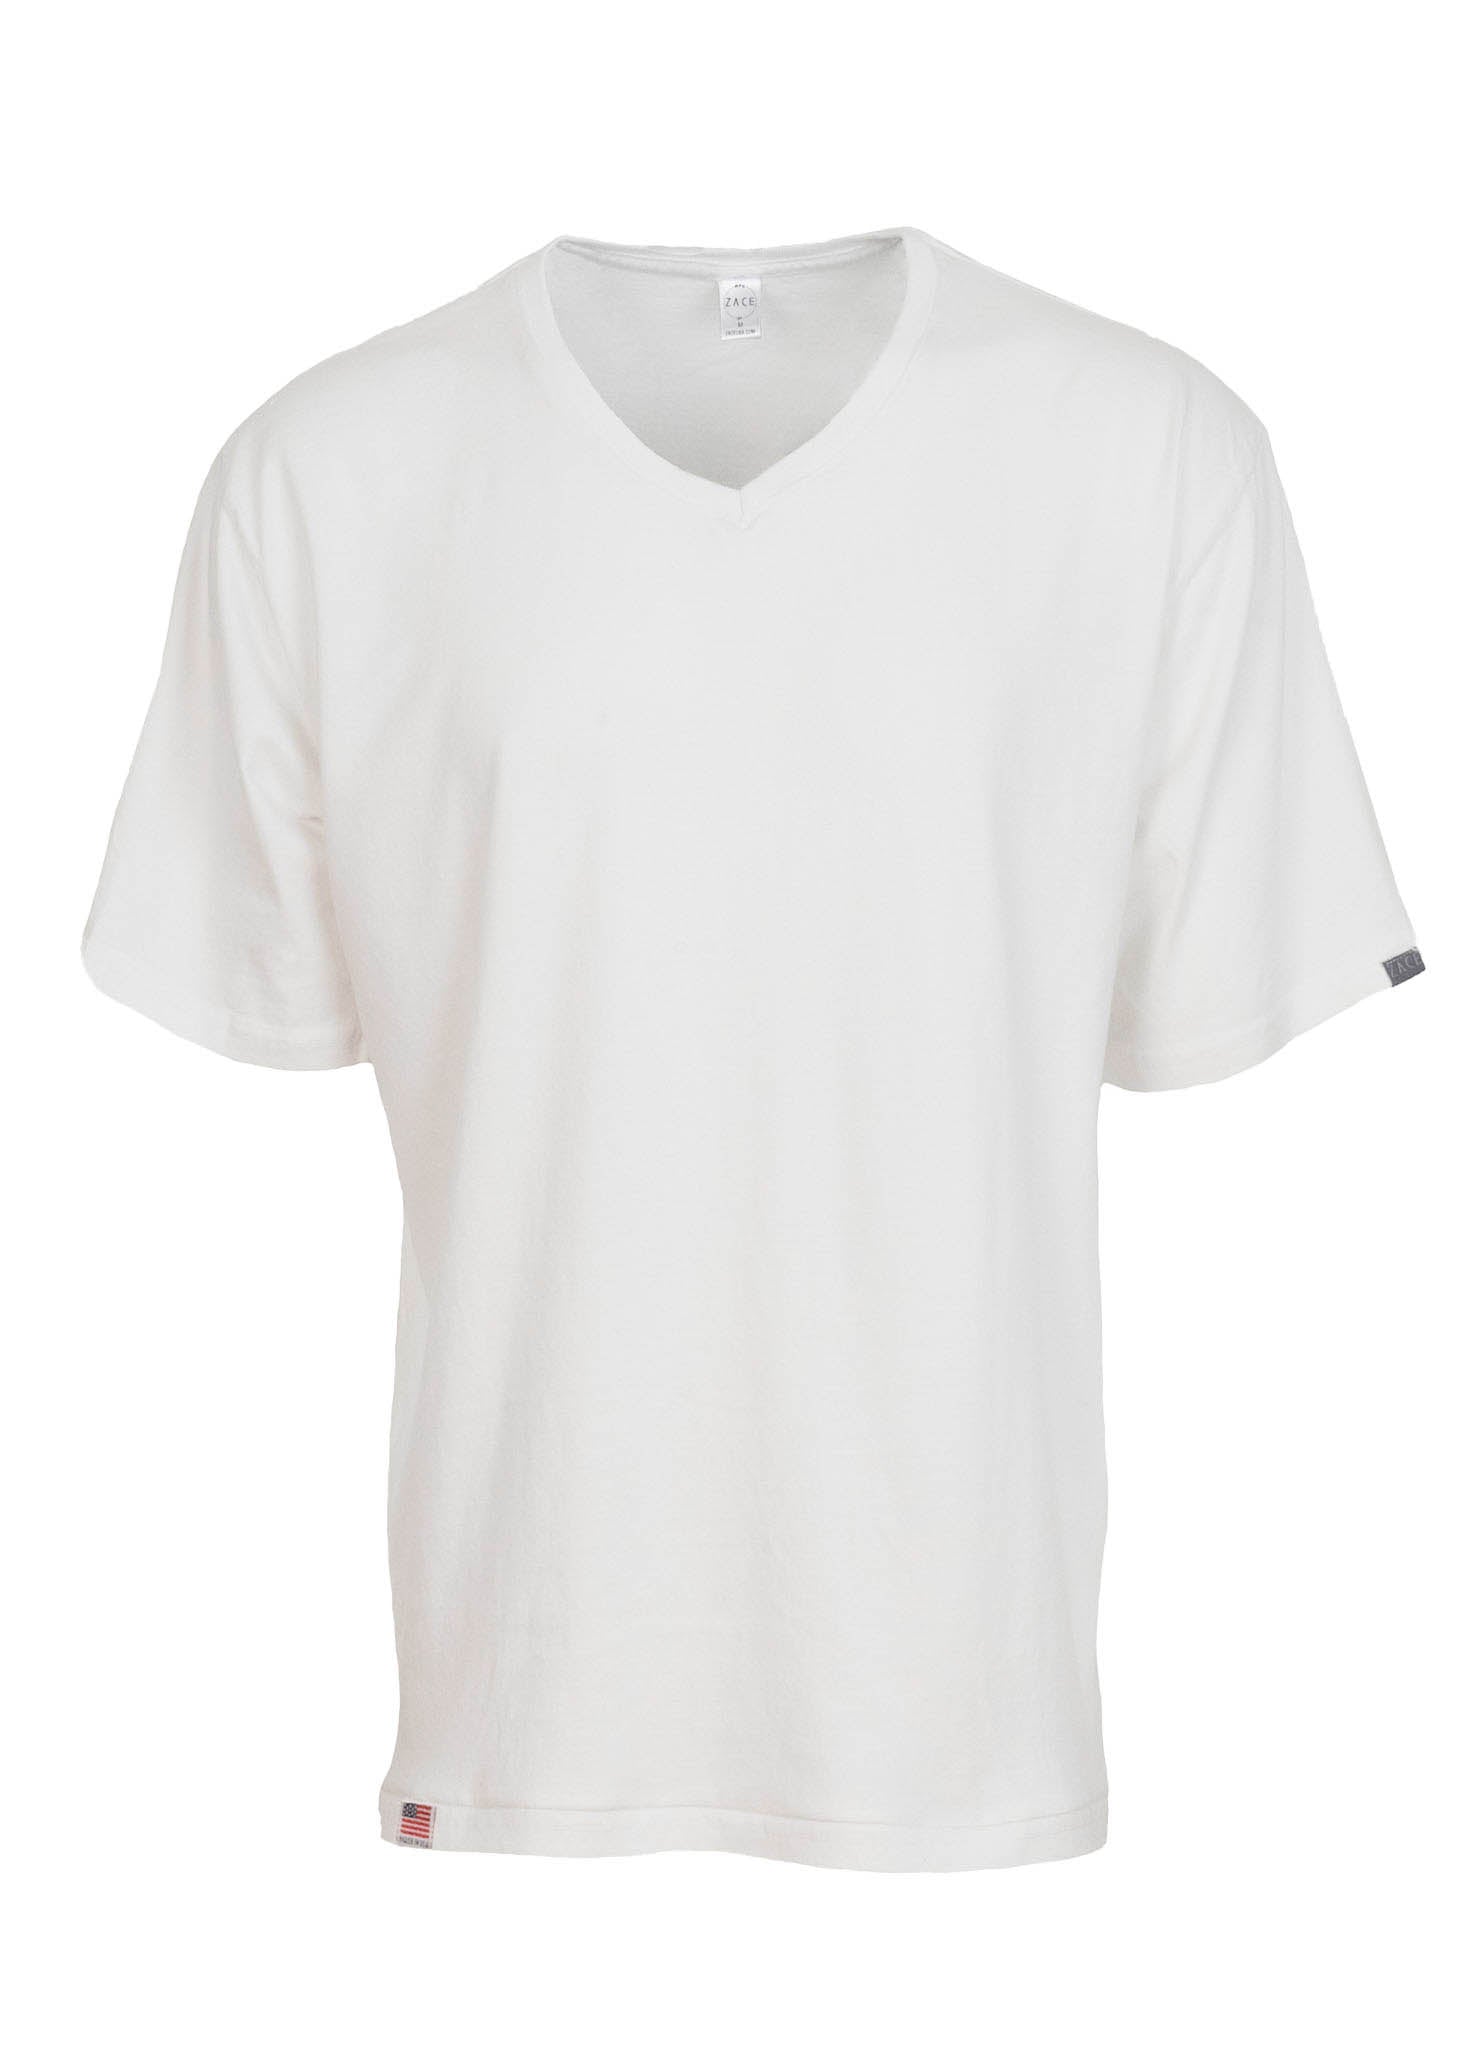 Short Sleeve V-Neck Work Tee Shirt White